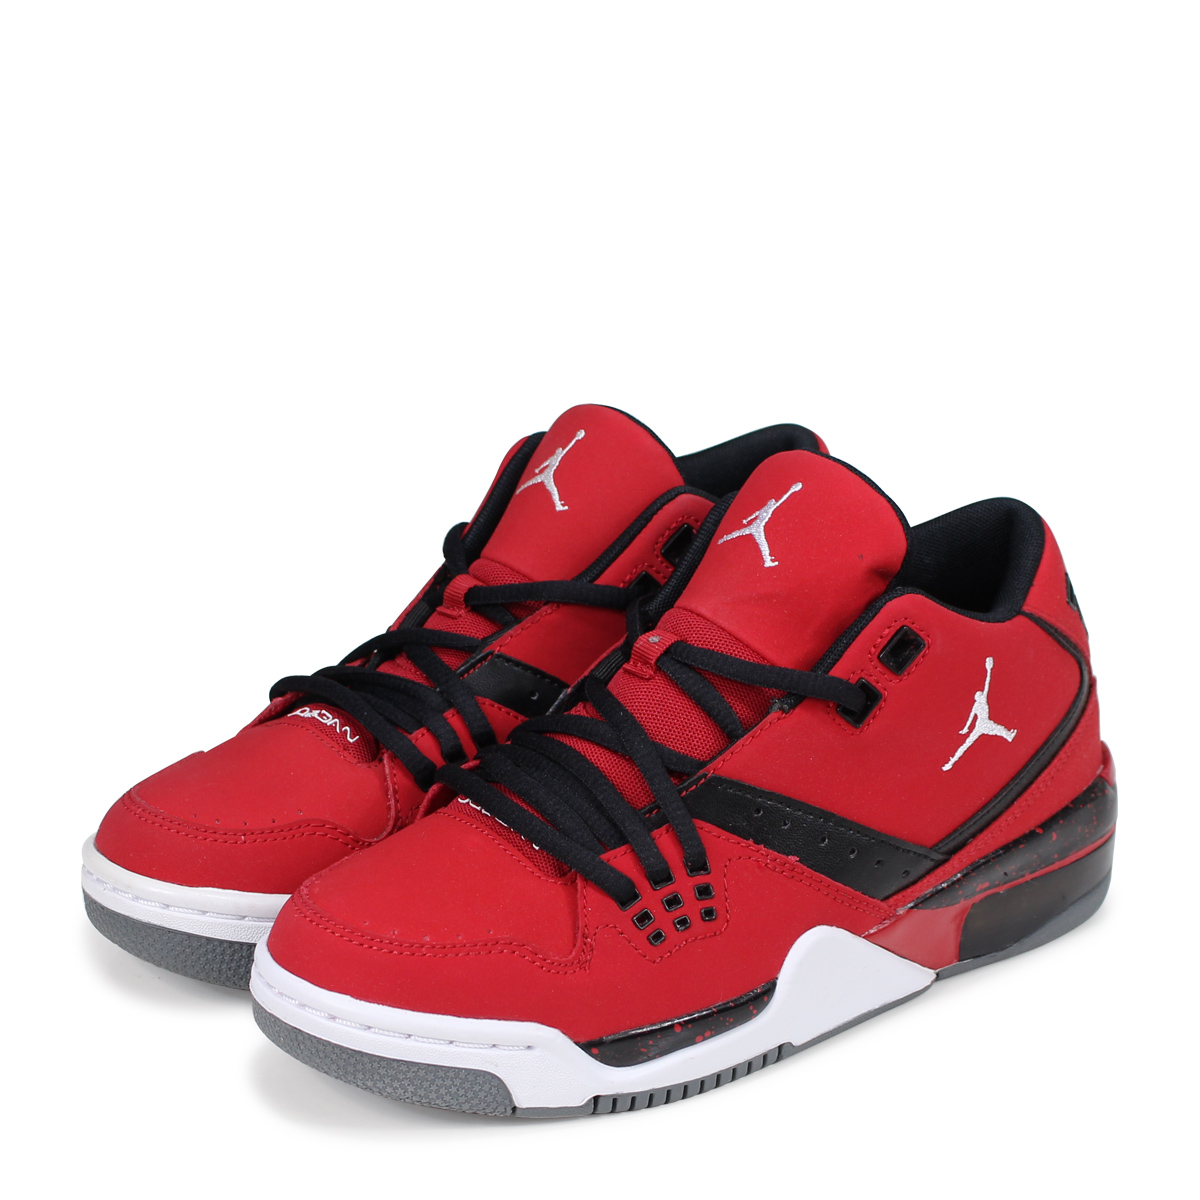 jordan shoes 23 red